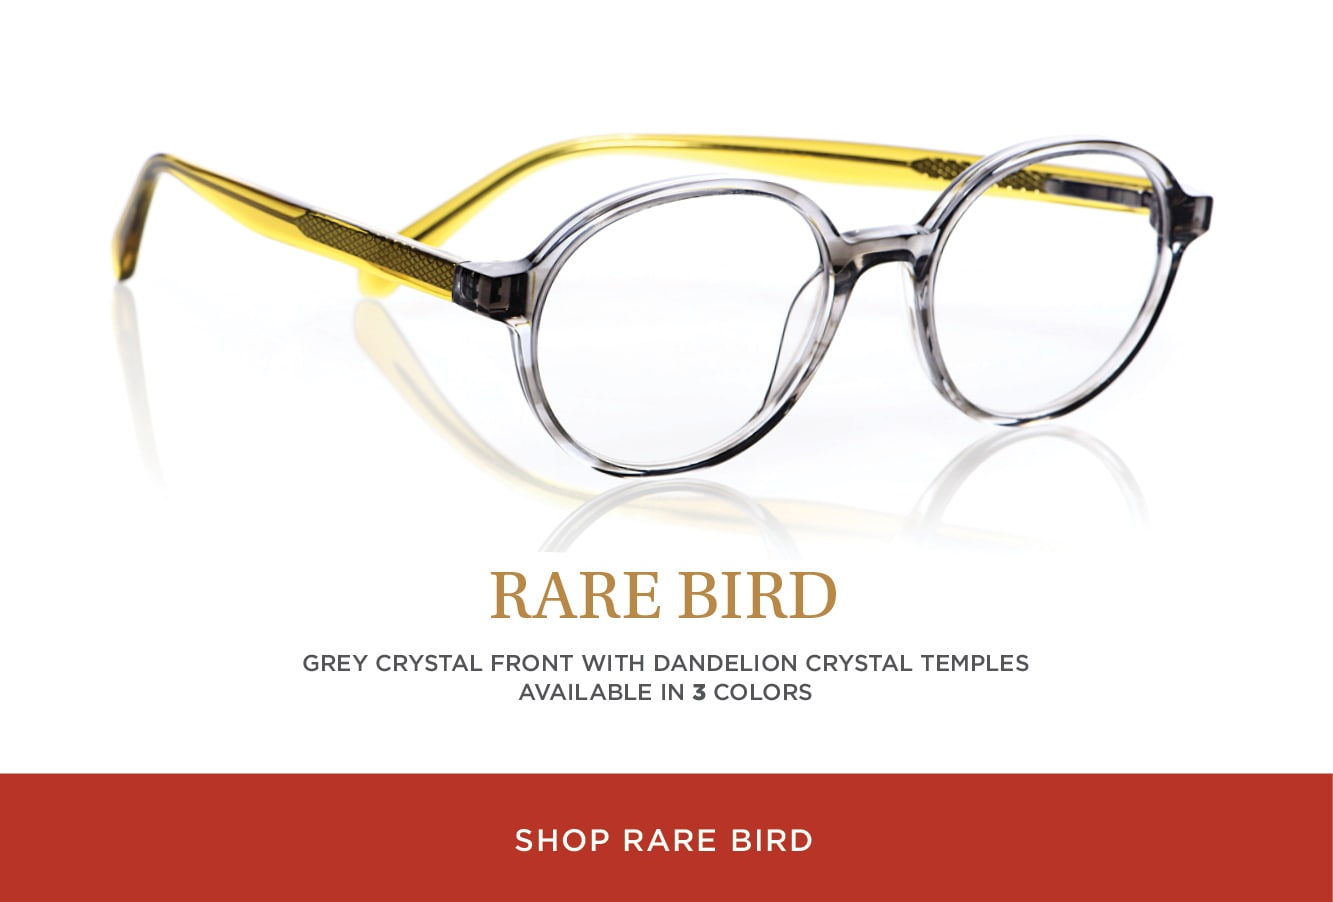 Shop Rare Bird